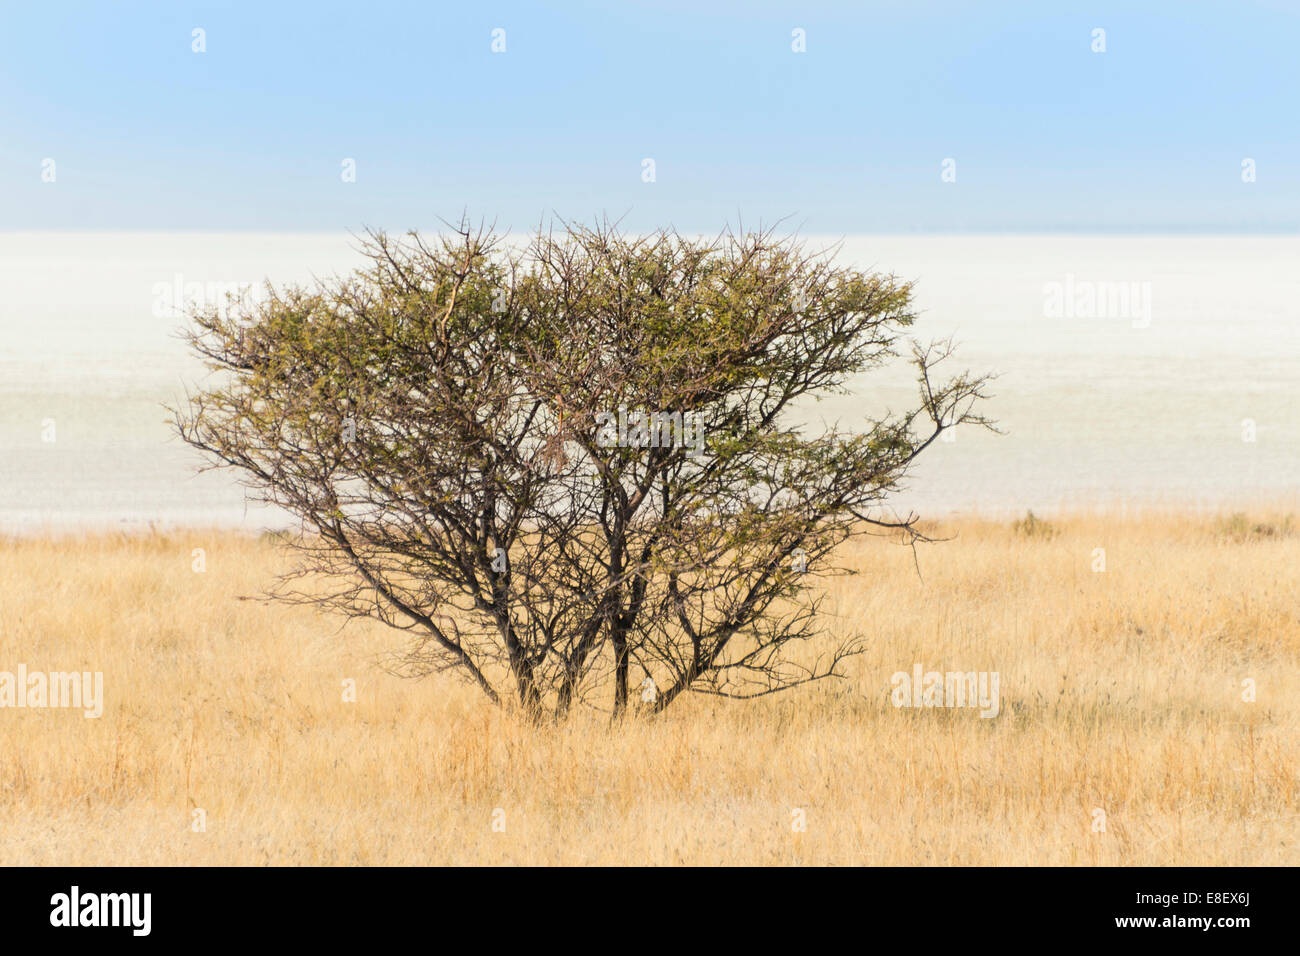 Acacia bush, Etosha National Park, Namibia Stock Photo